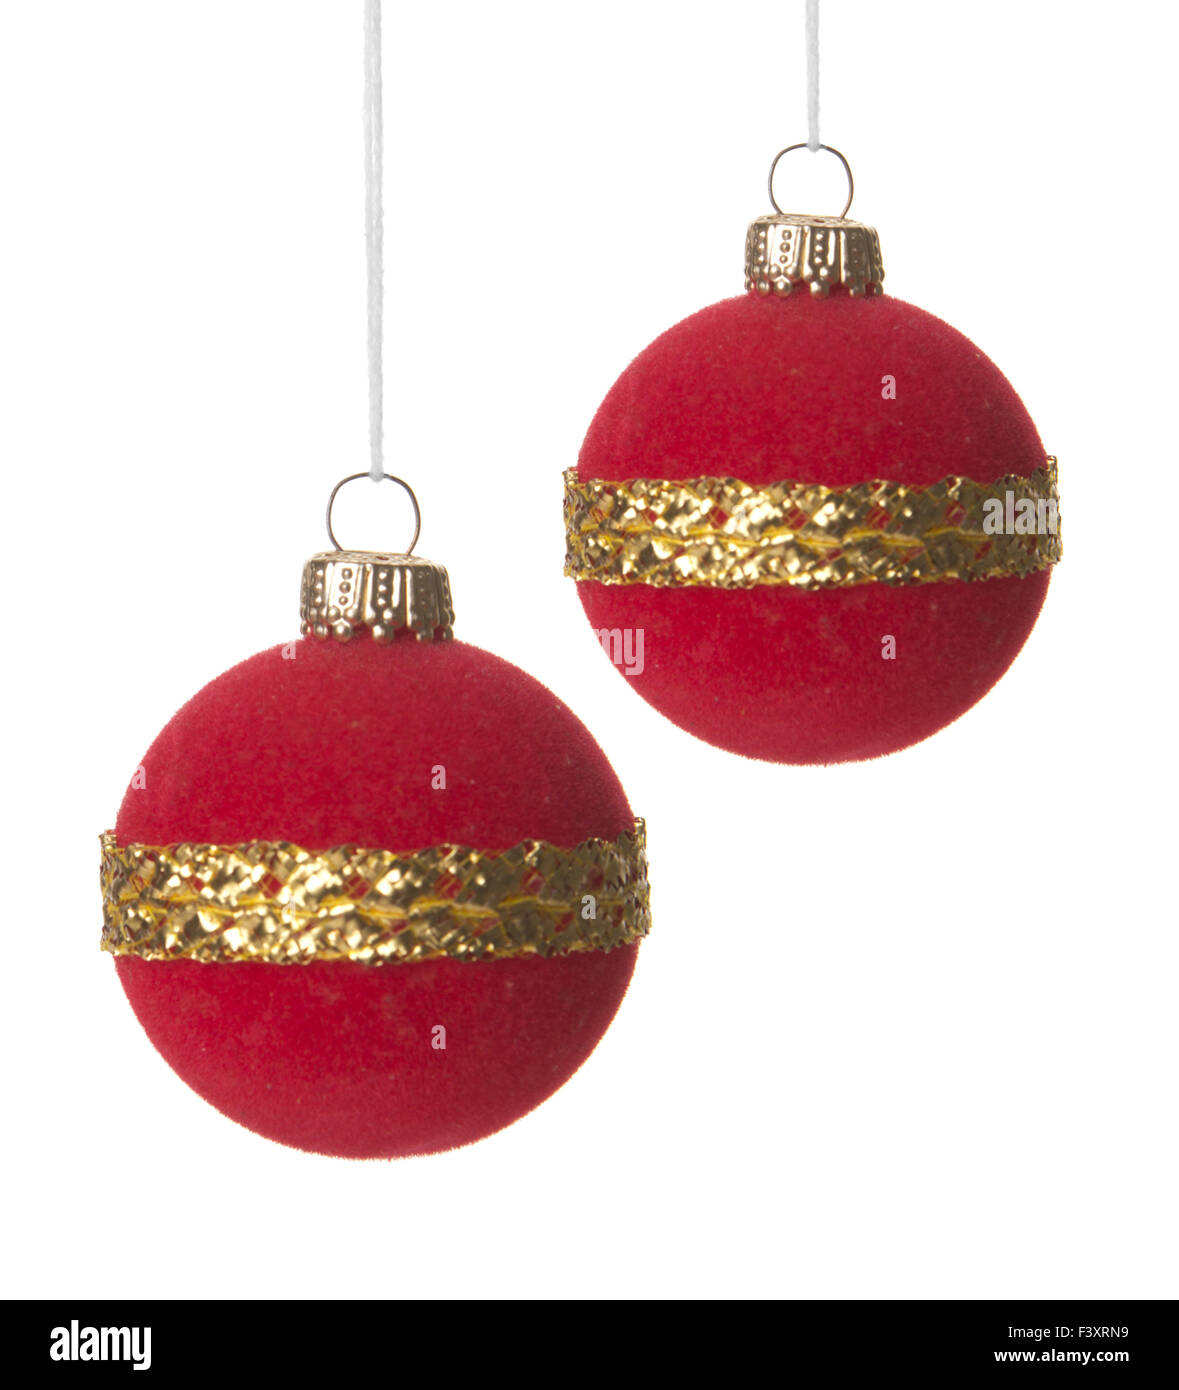 Noël, boules de Noël rouge et or Banque D'Images